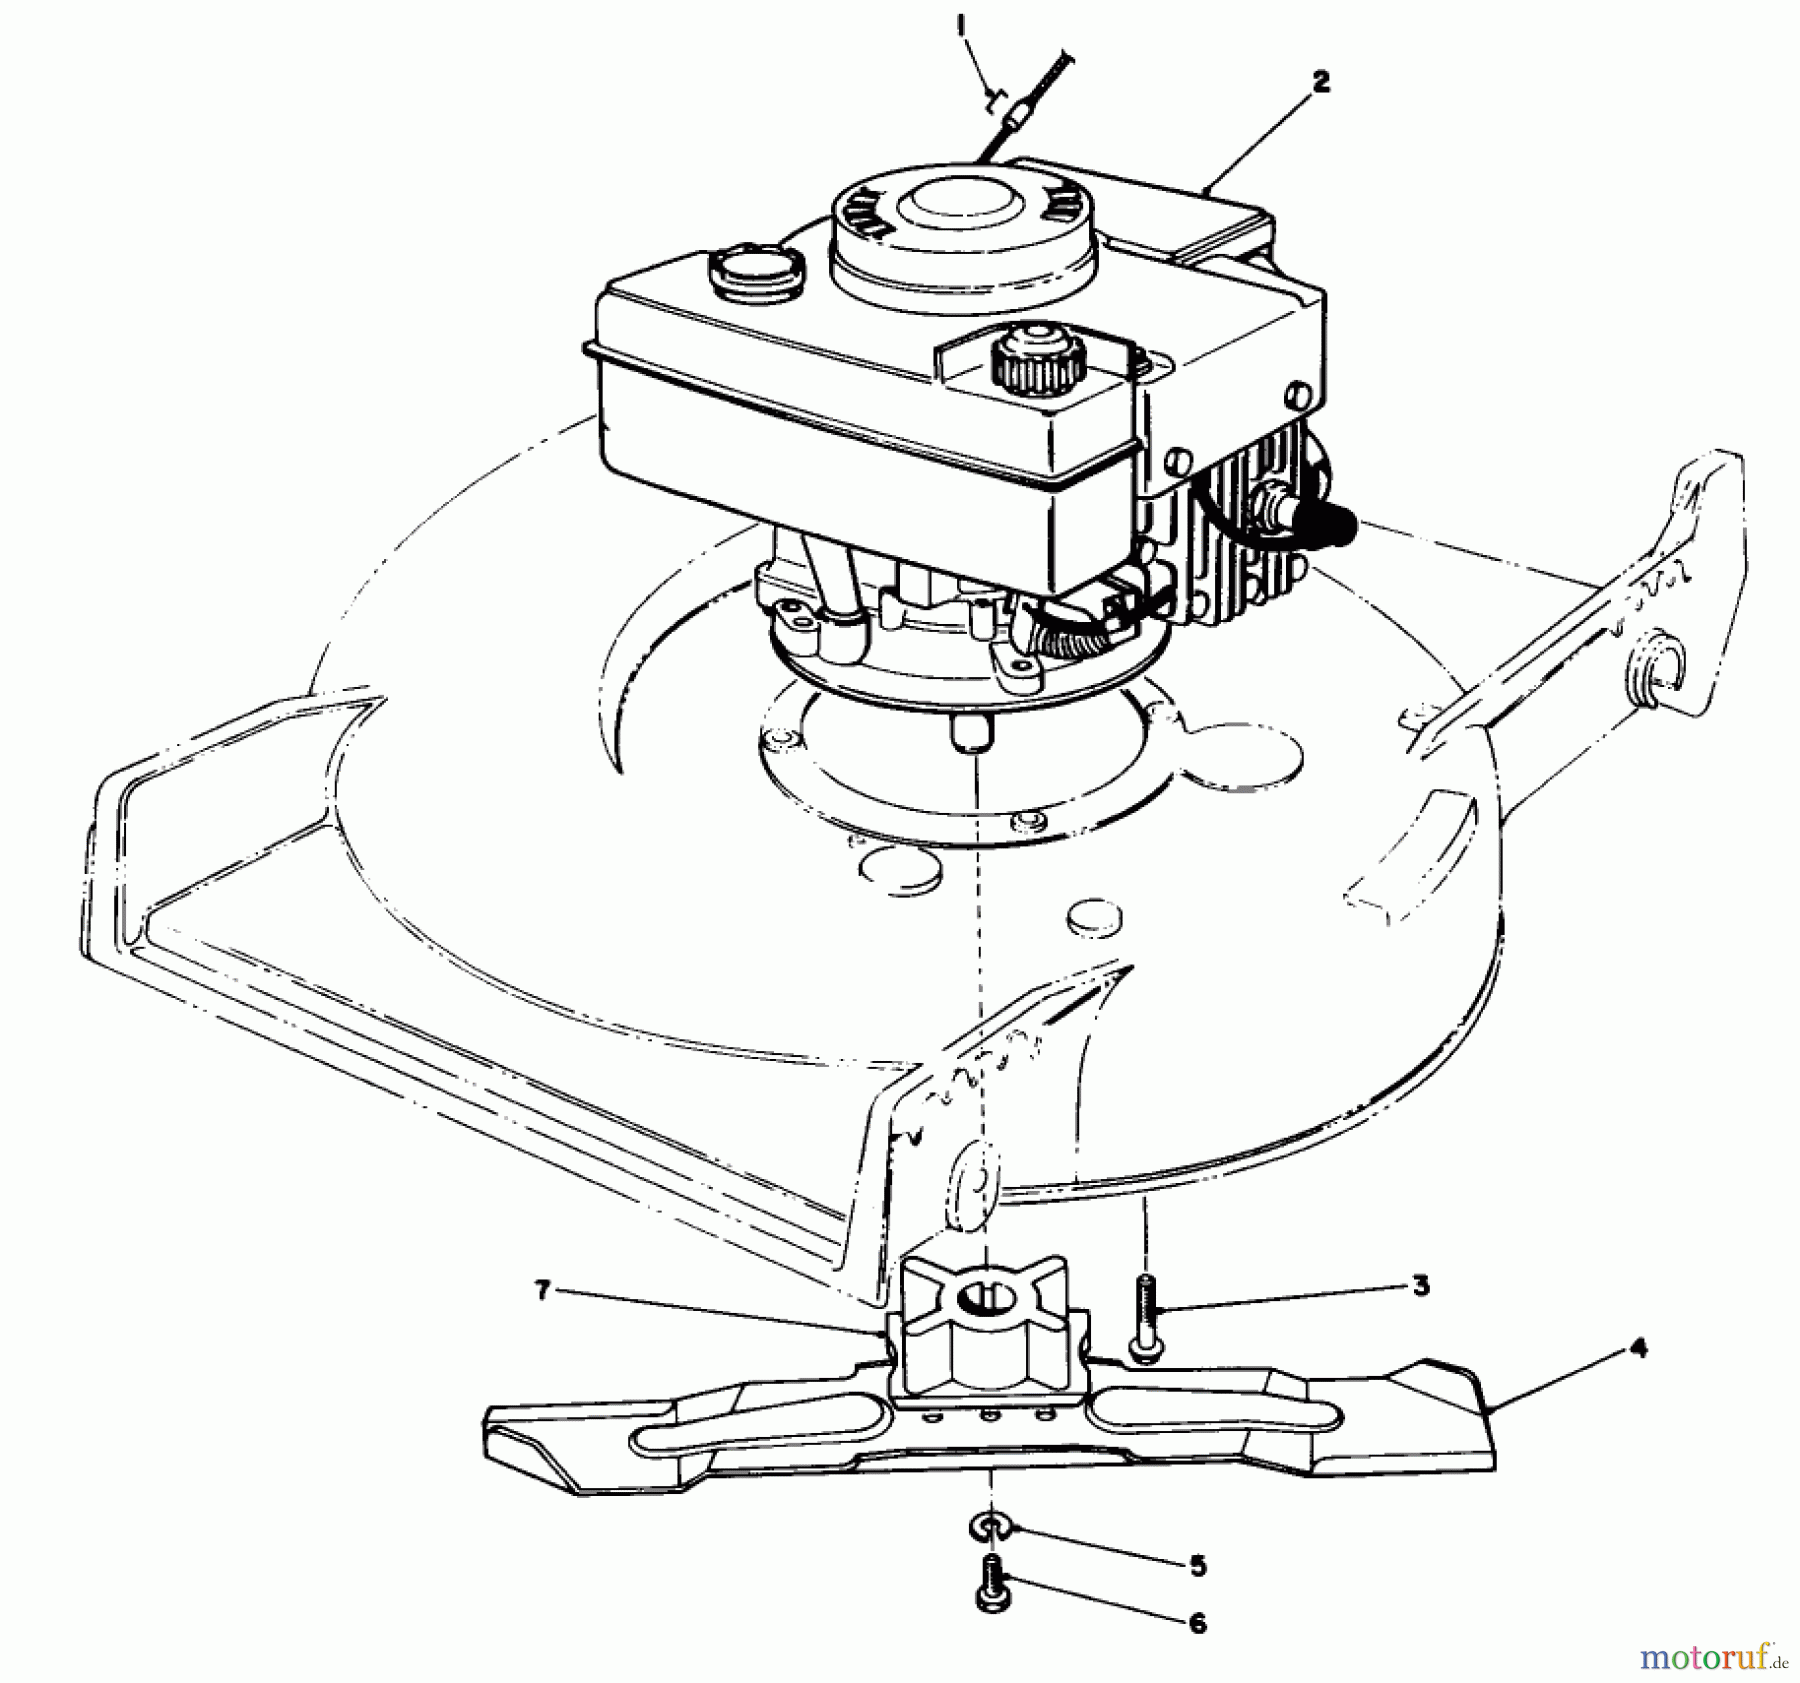  Toro Neu Mowers, Walk-Behind Seite 1 20588C - Toro Lawnmower, 1989 (9000001-9999999) ENGINE ASSEMBLY